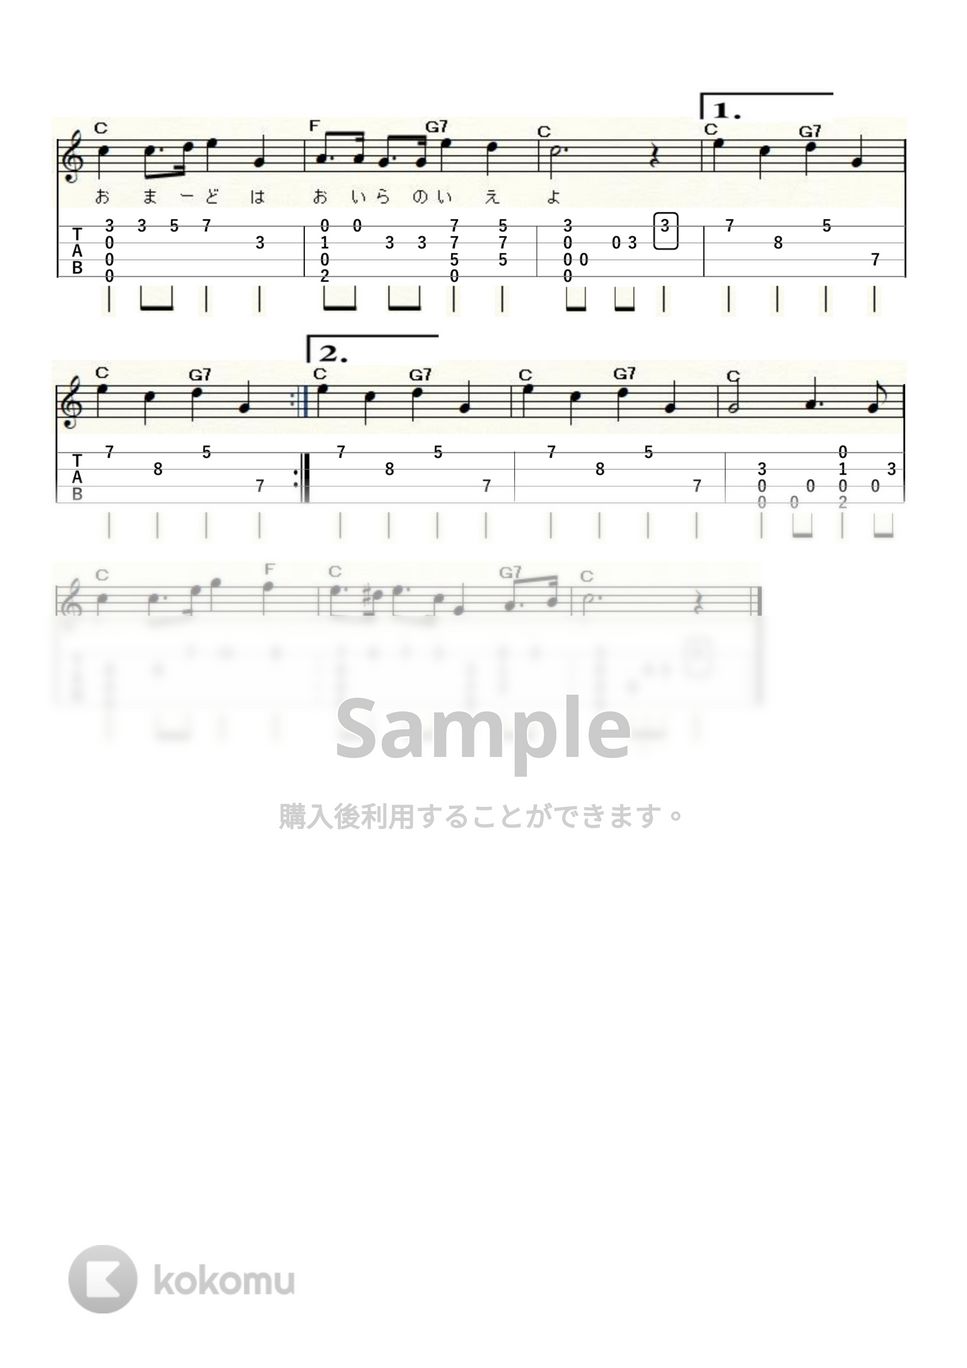 古関裕而 - 鐘の鳴る丘 (ｳｸﾚﾚｿﾛ / Low-G / 初～中級) by ukulelepapa